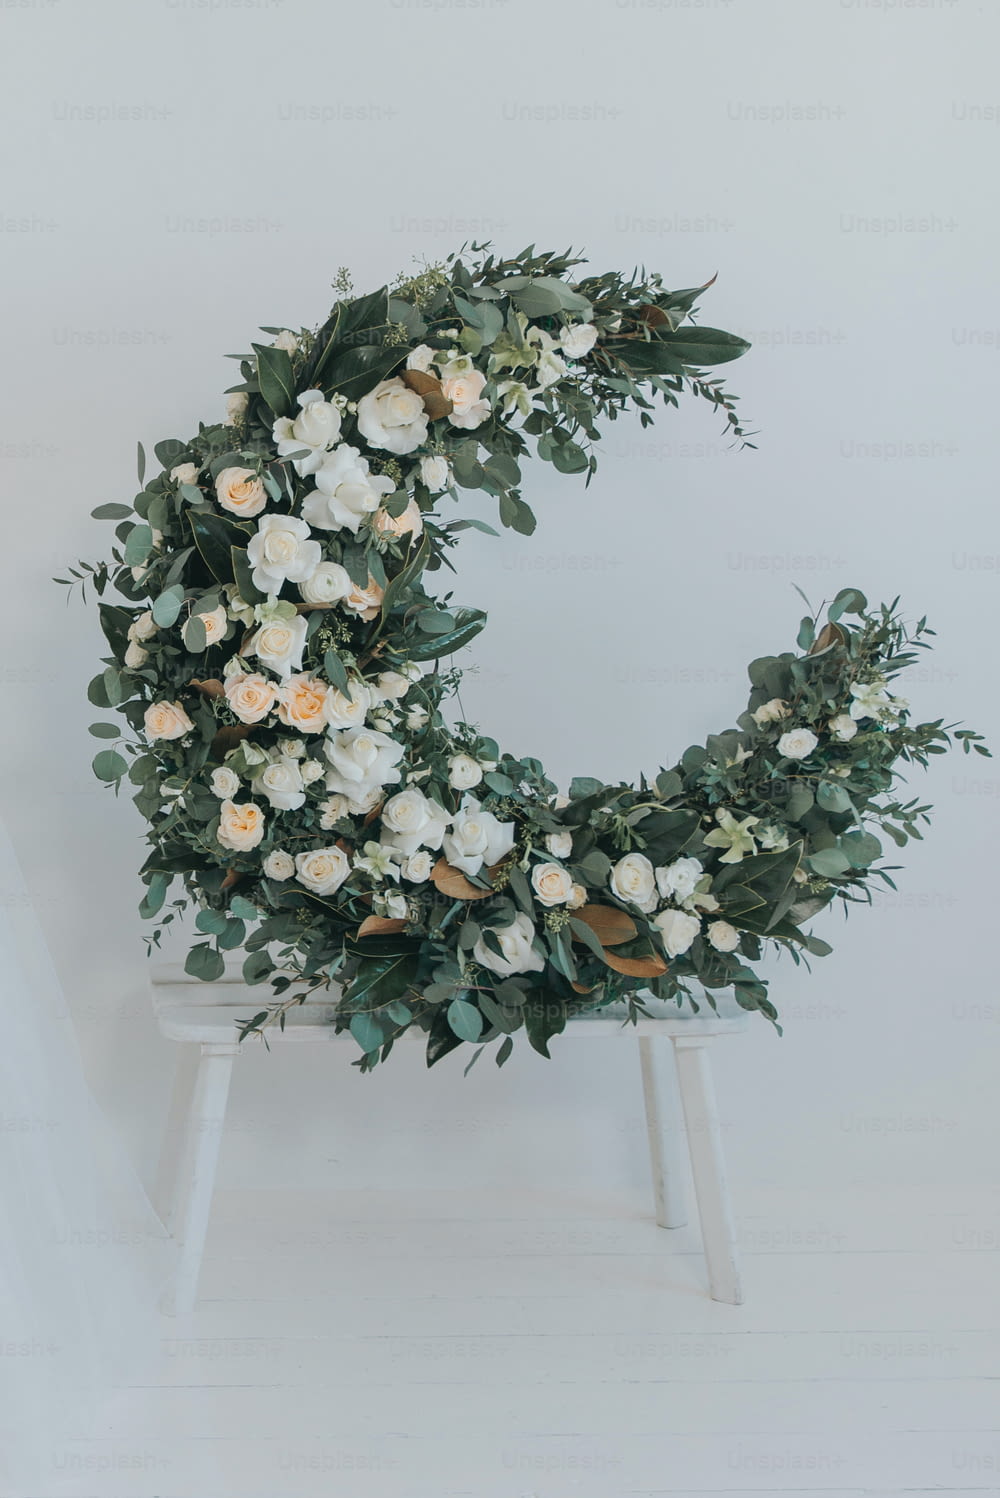 a white flower wreath on a white chair